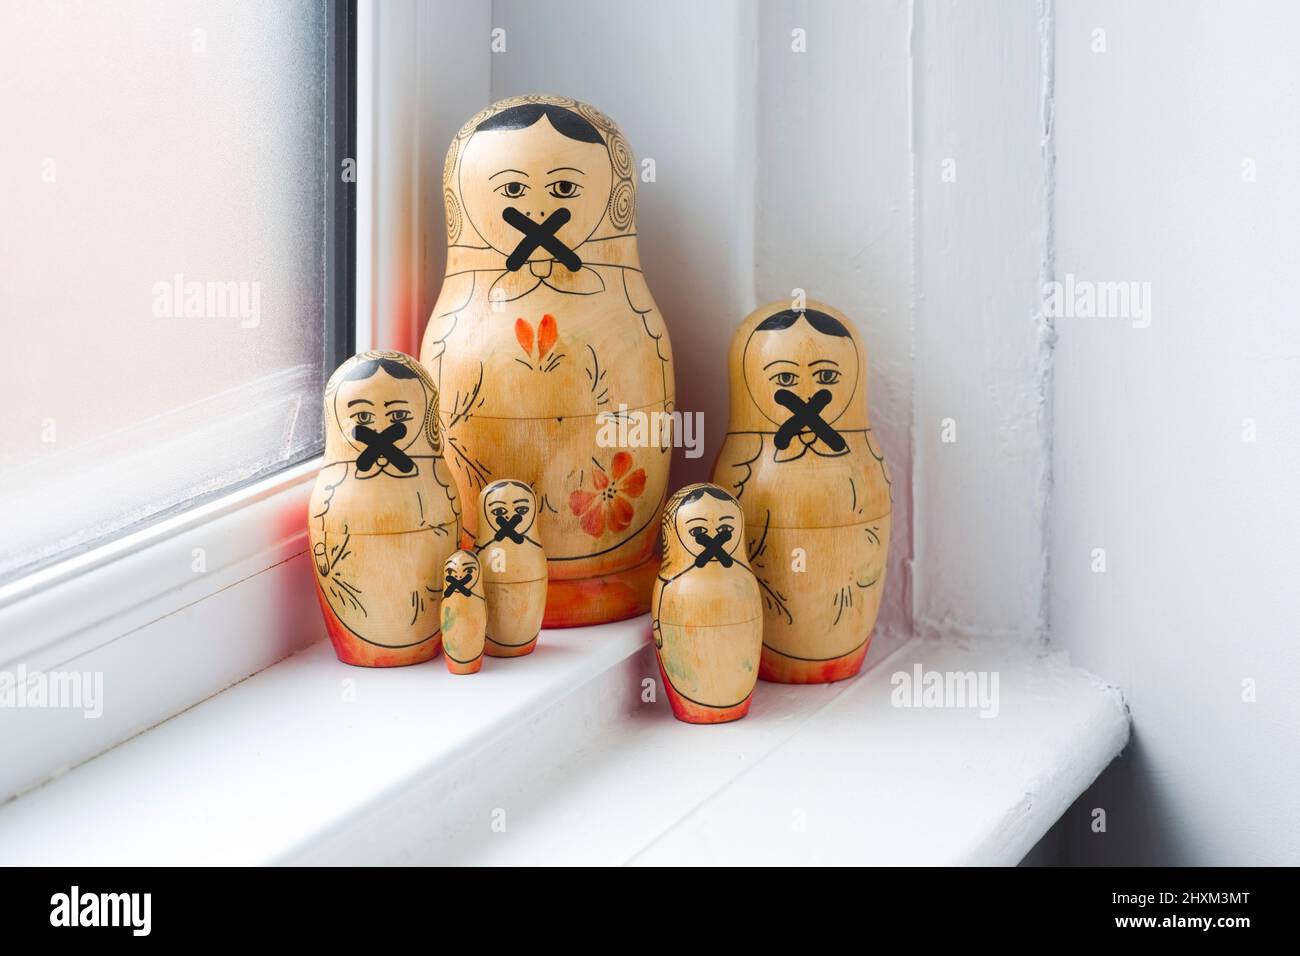 Familia de muñecas rusas en una agrupación en un alféizar de la ventana con sus bocas tachadas para que no puedan hablar Foto de stock